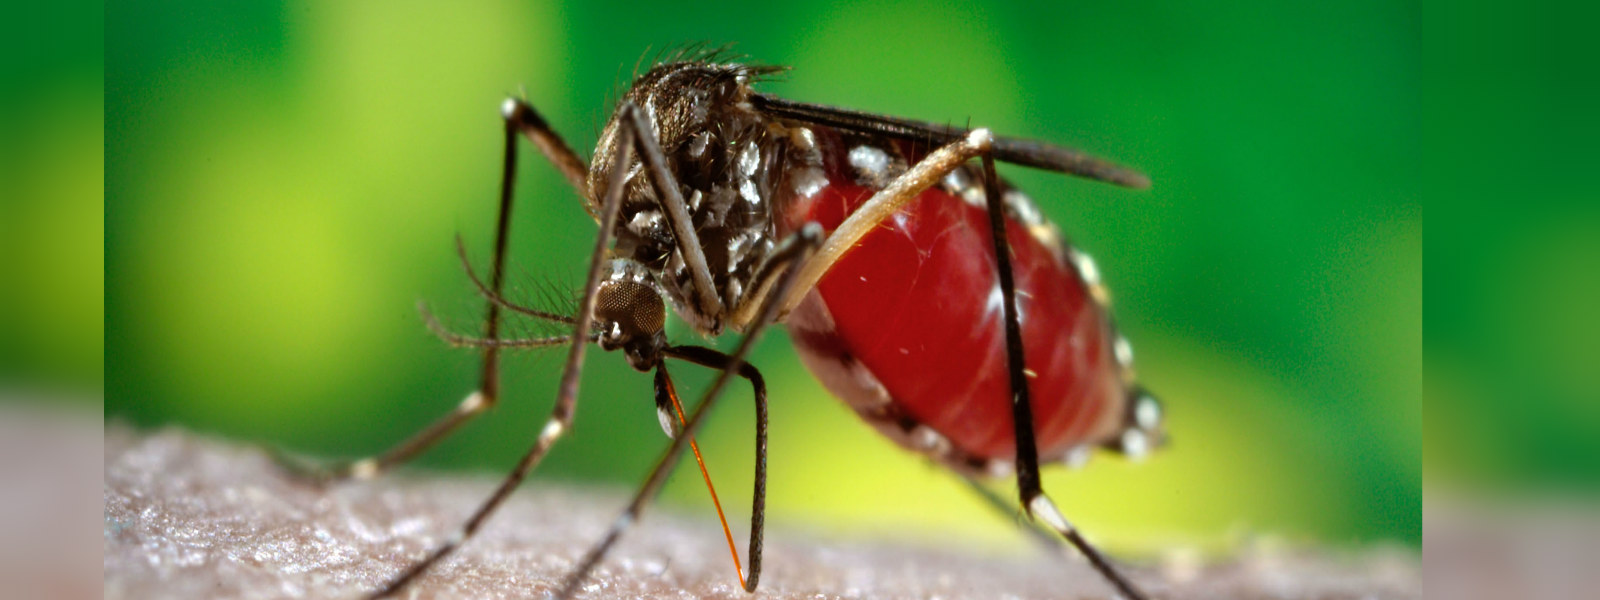 Health sector raise concern of spread of dengue